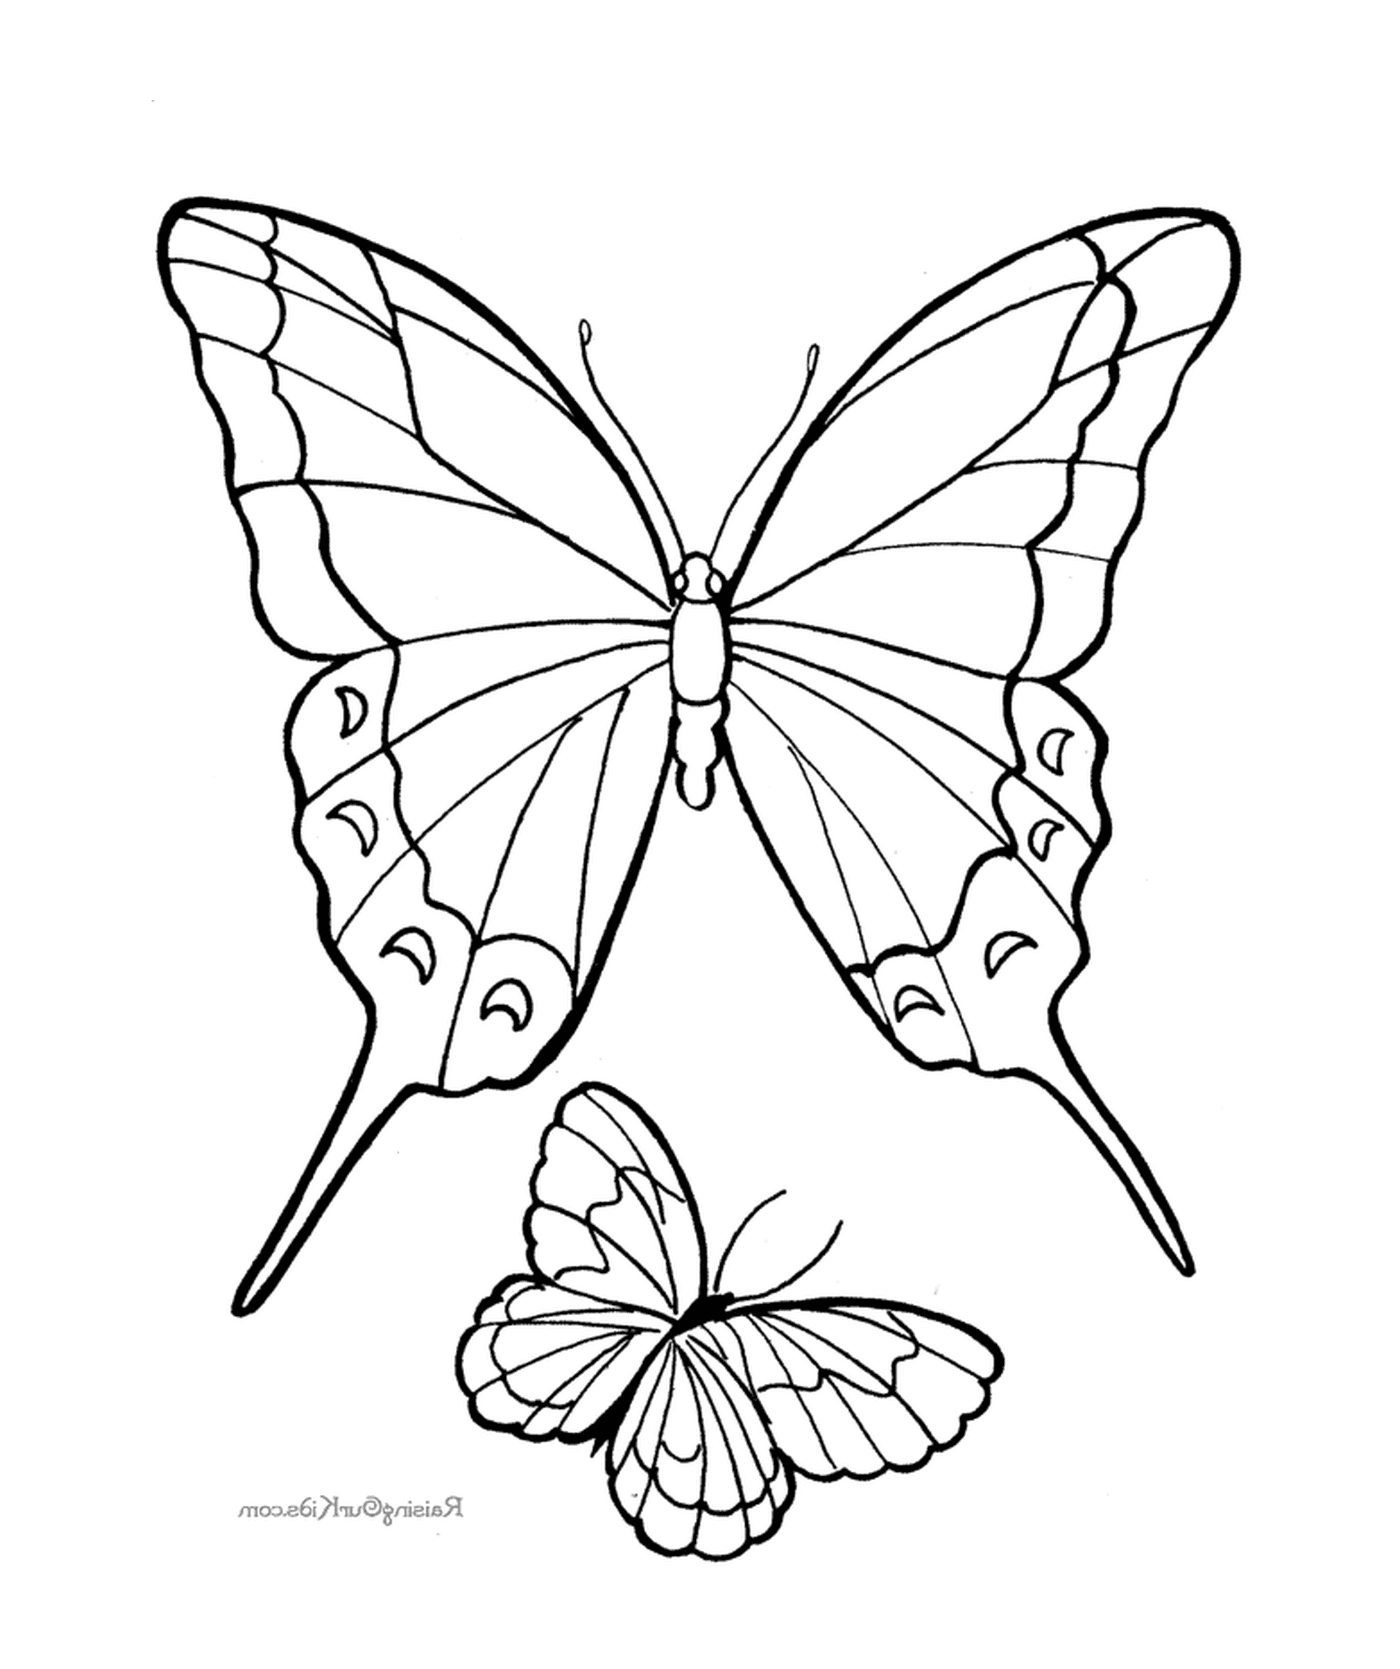  Two butterflies meet 